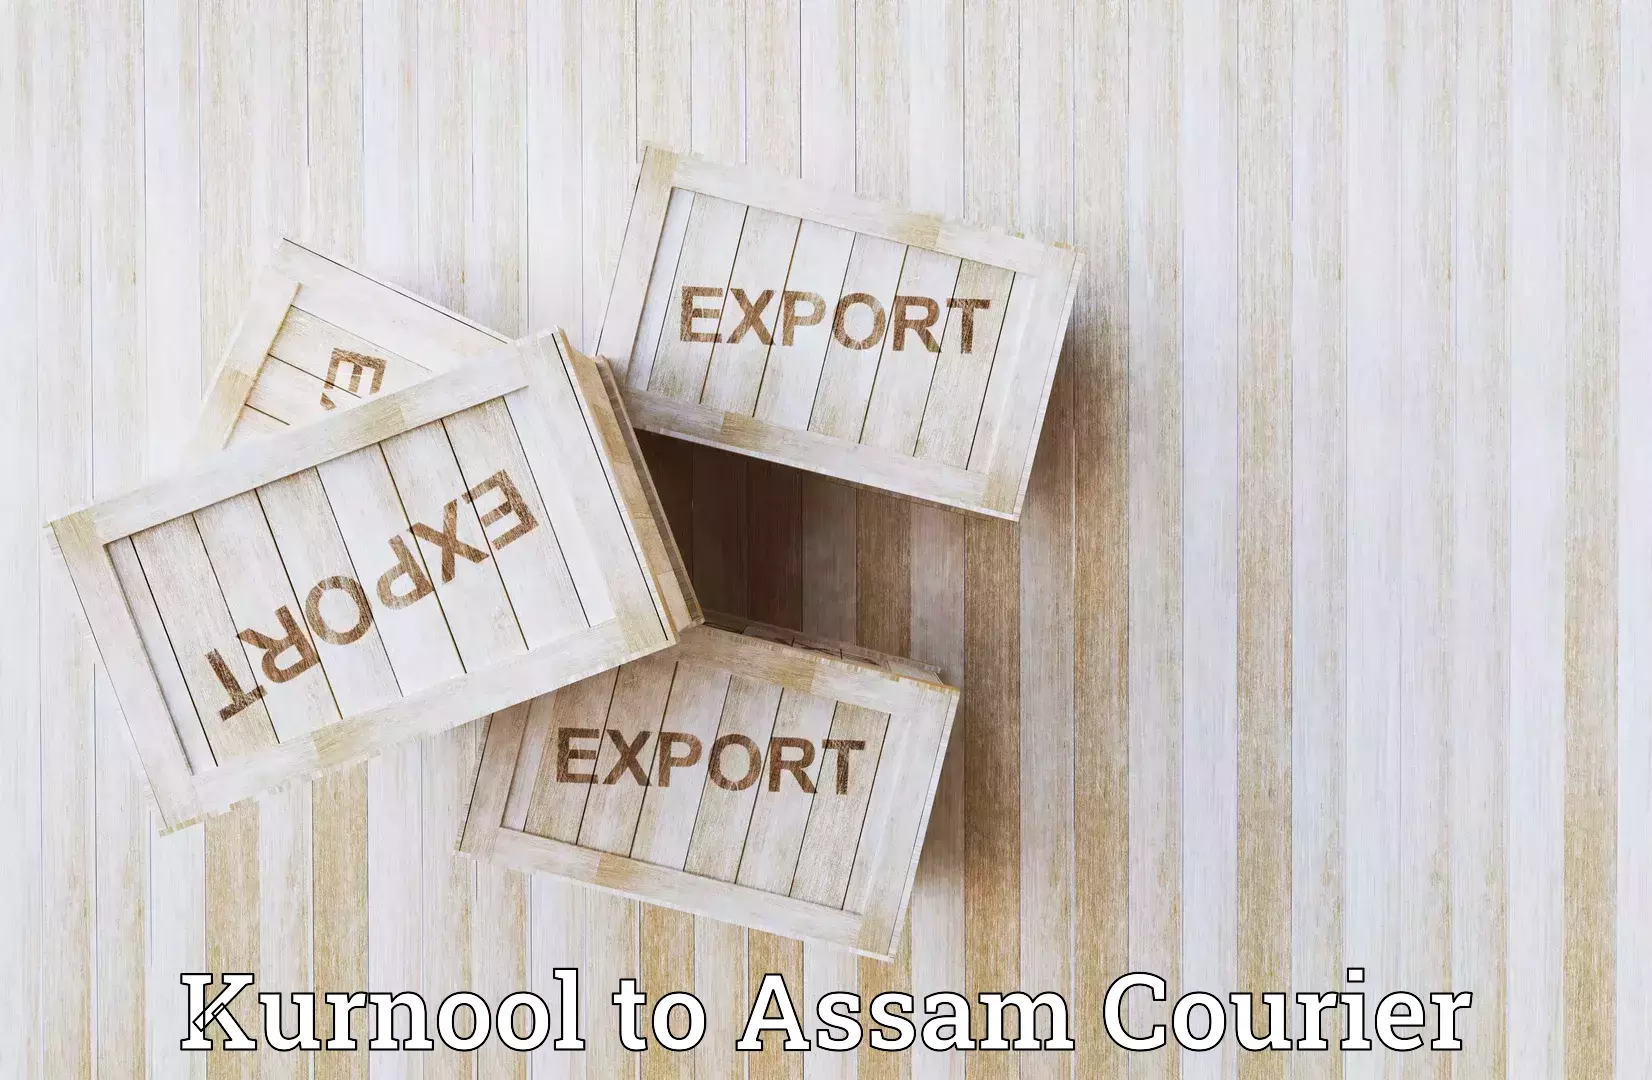 Business shipping needs Kurnool to Assam